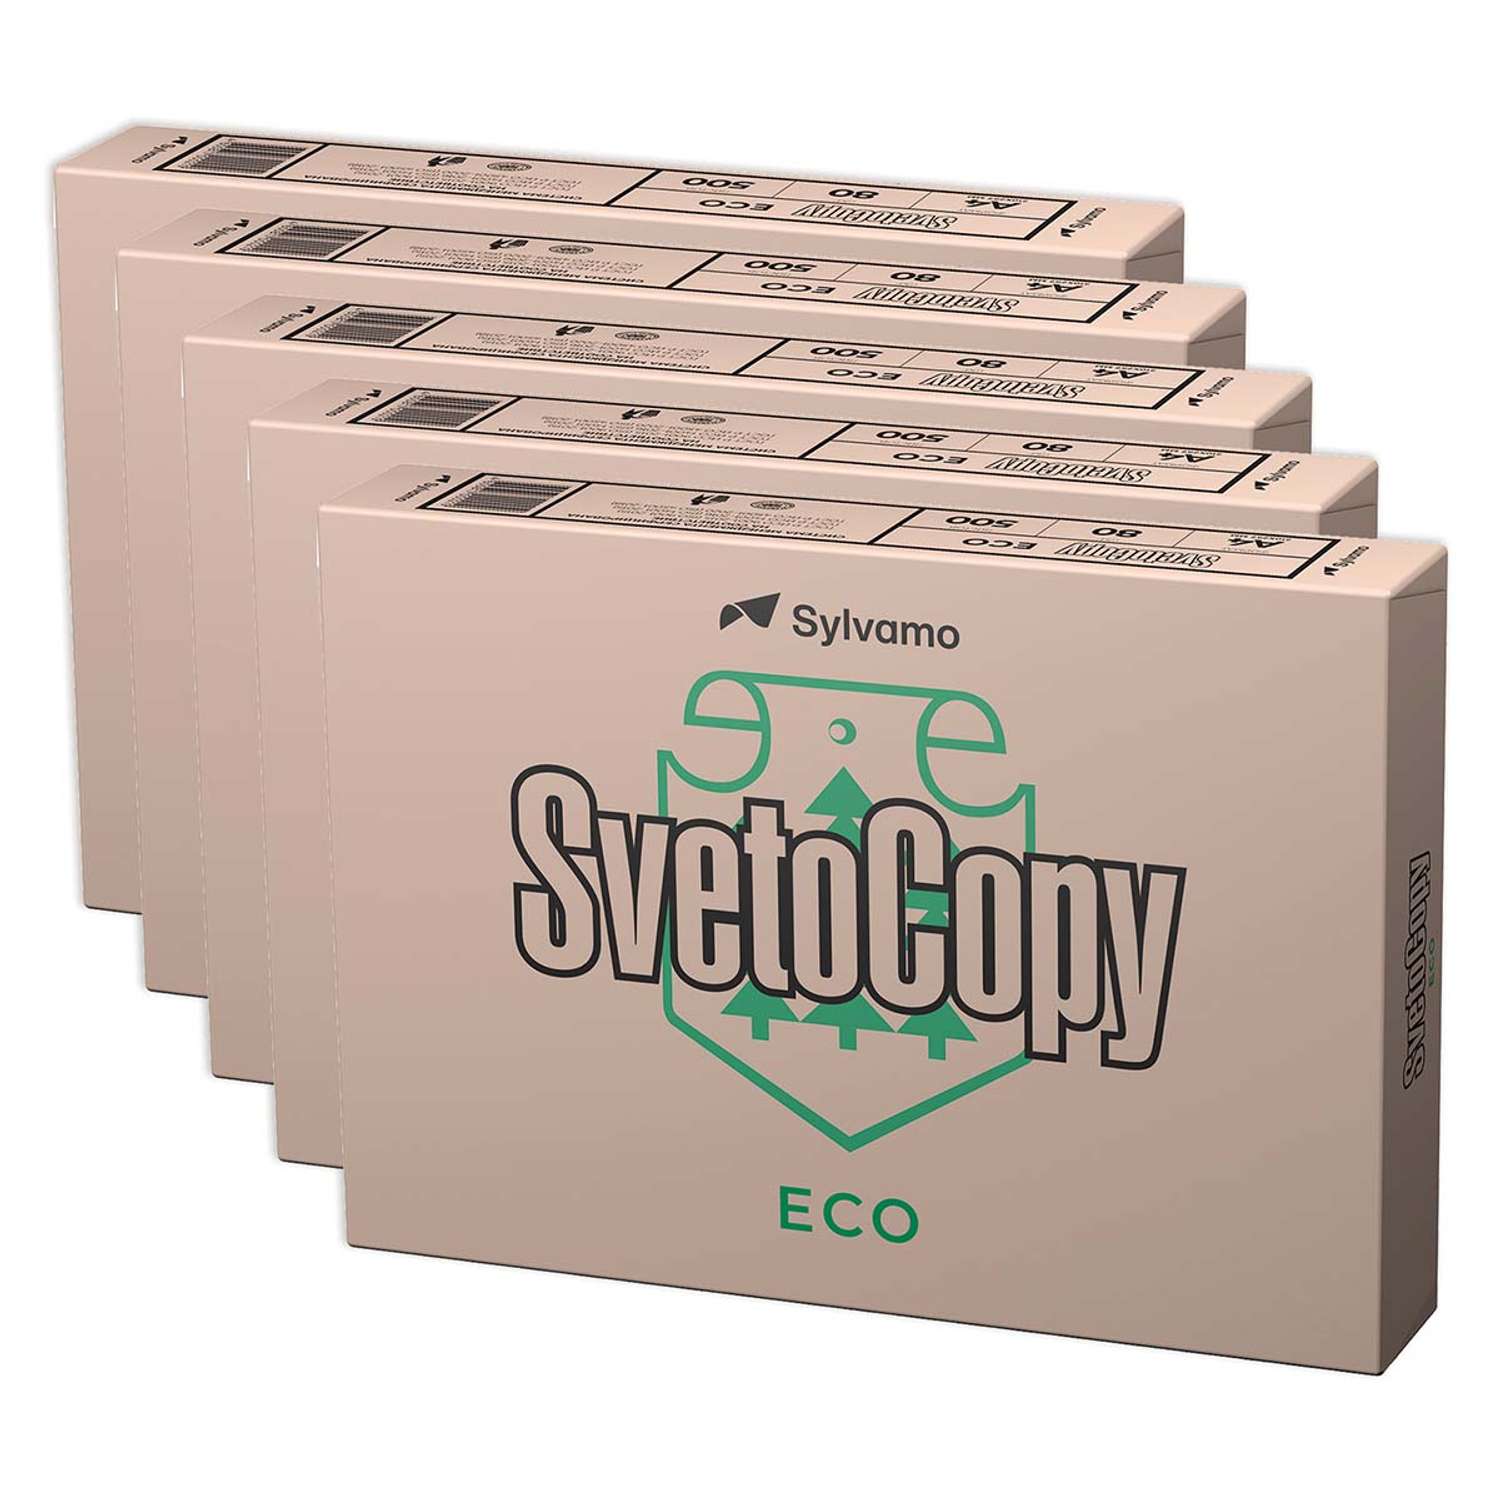 Бумага для принтера SVETOCOPY и печати А4 Комплект 5 пачек по 500 листов - фото 1